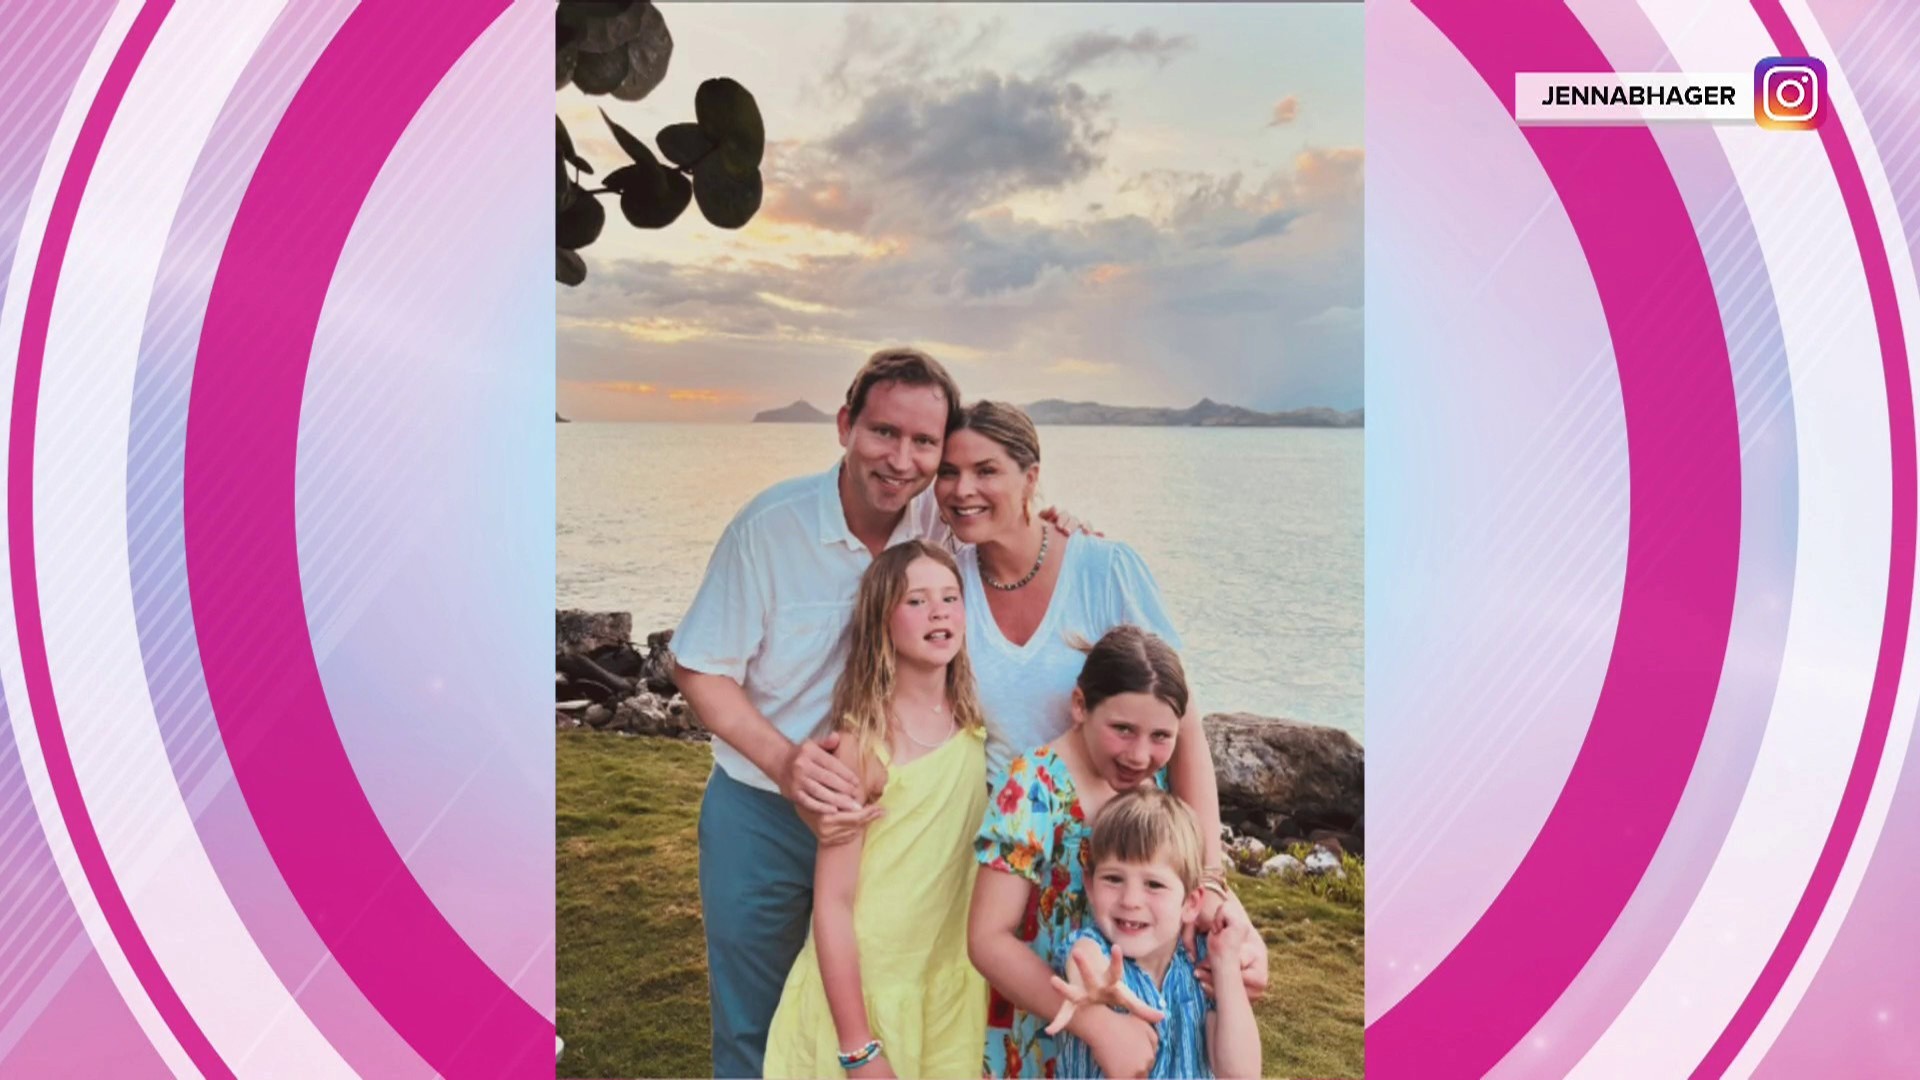 Jenna Bush Hager shares family photos from Caribbean vacation